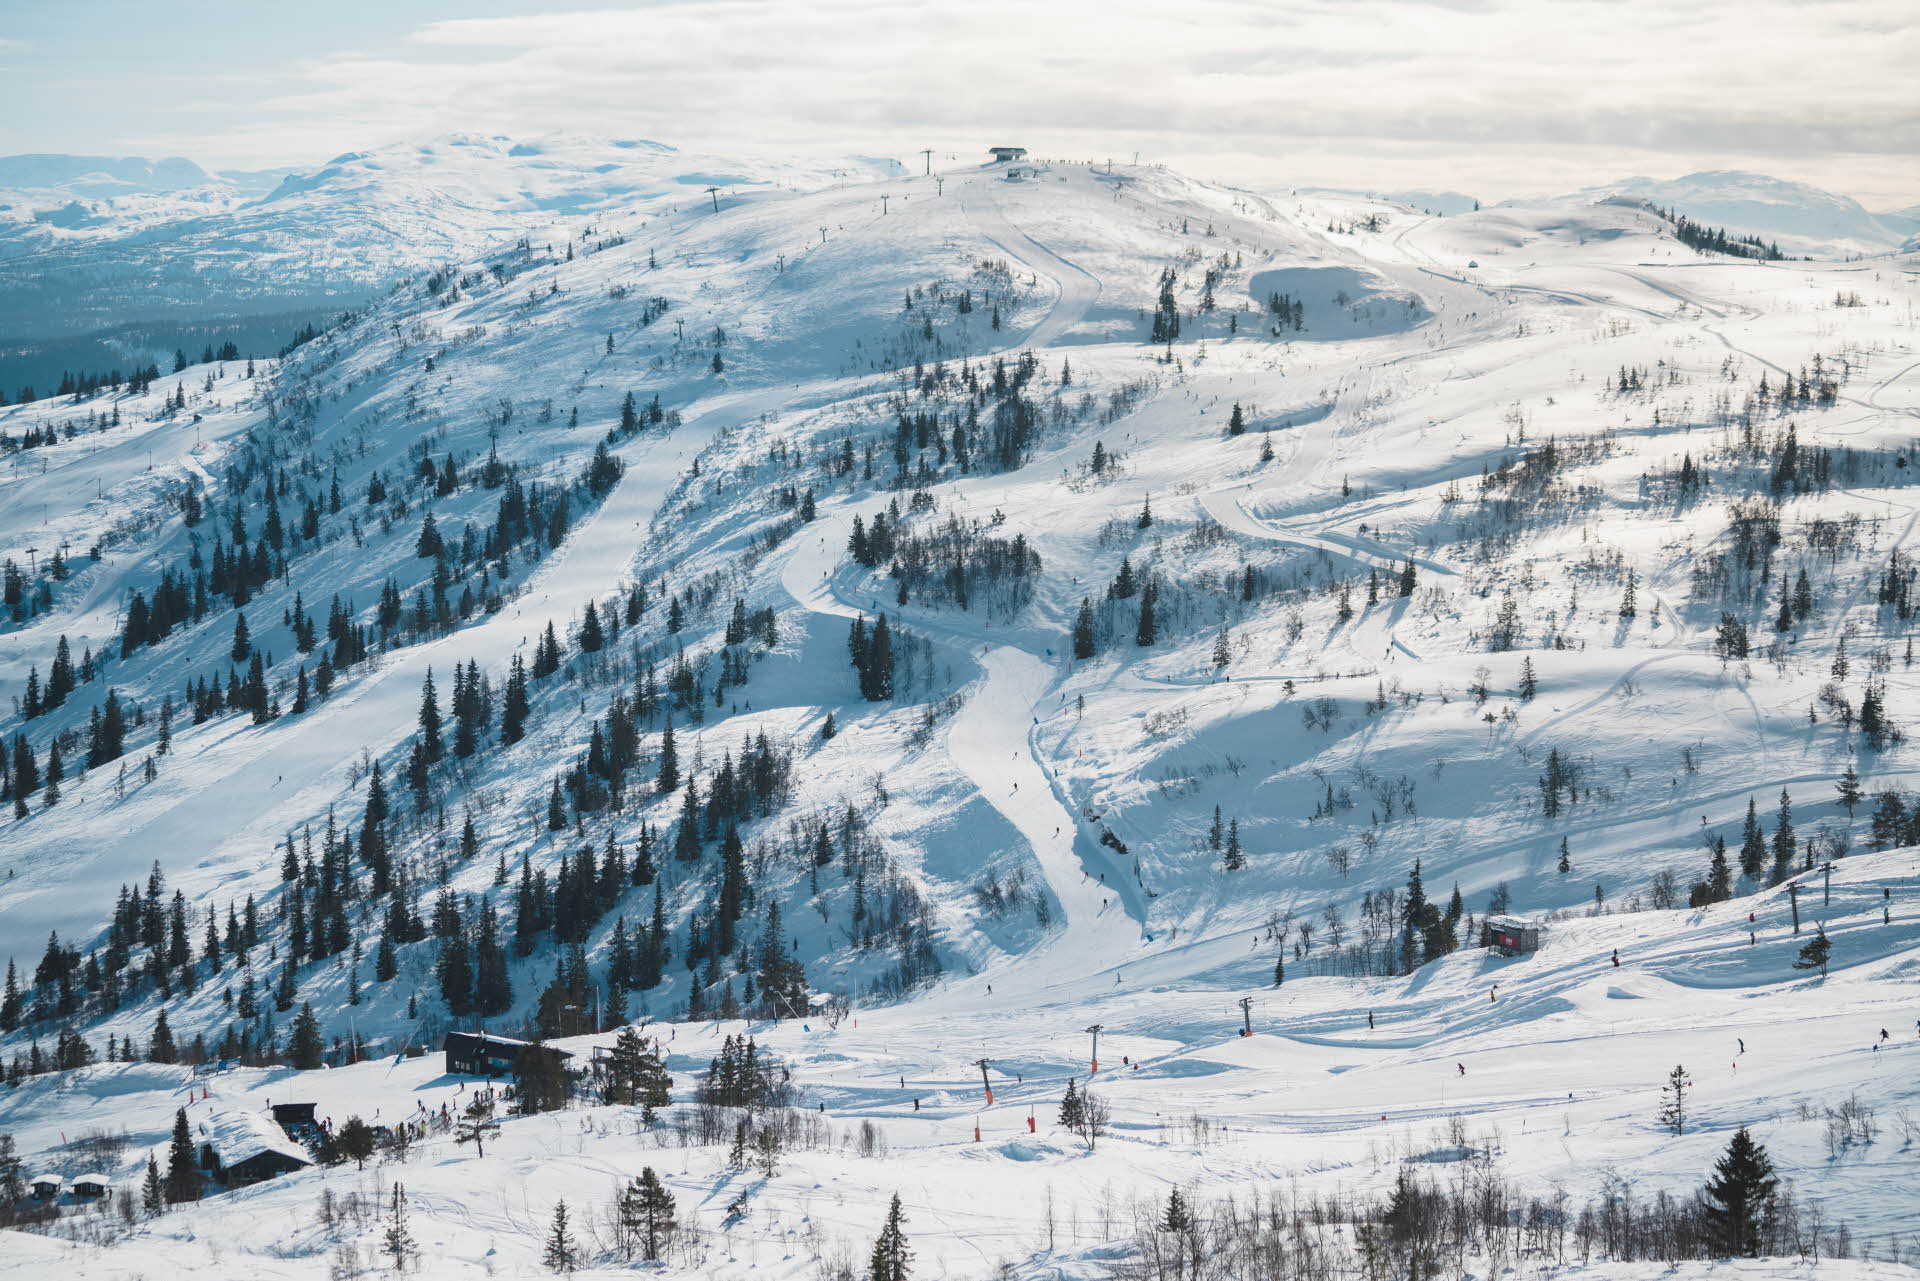 Blick auf die Skipisten des Voss-Resorts nahe der Bergstation Voss-Gondelbahn in einem schneebedeckten Winterwald.